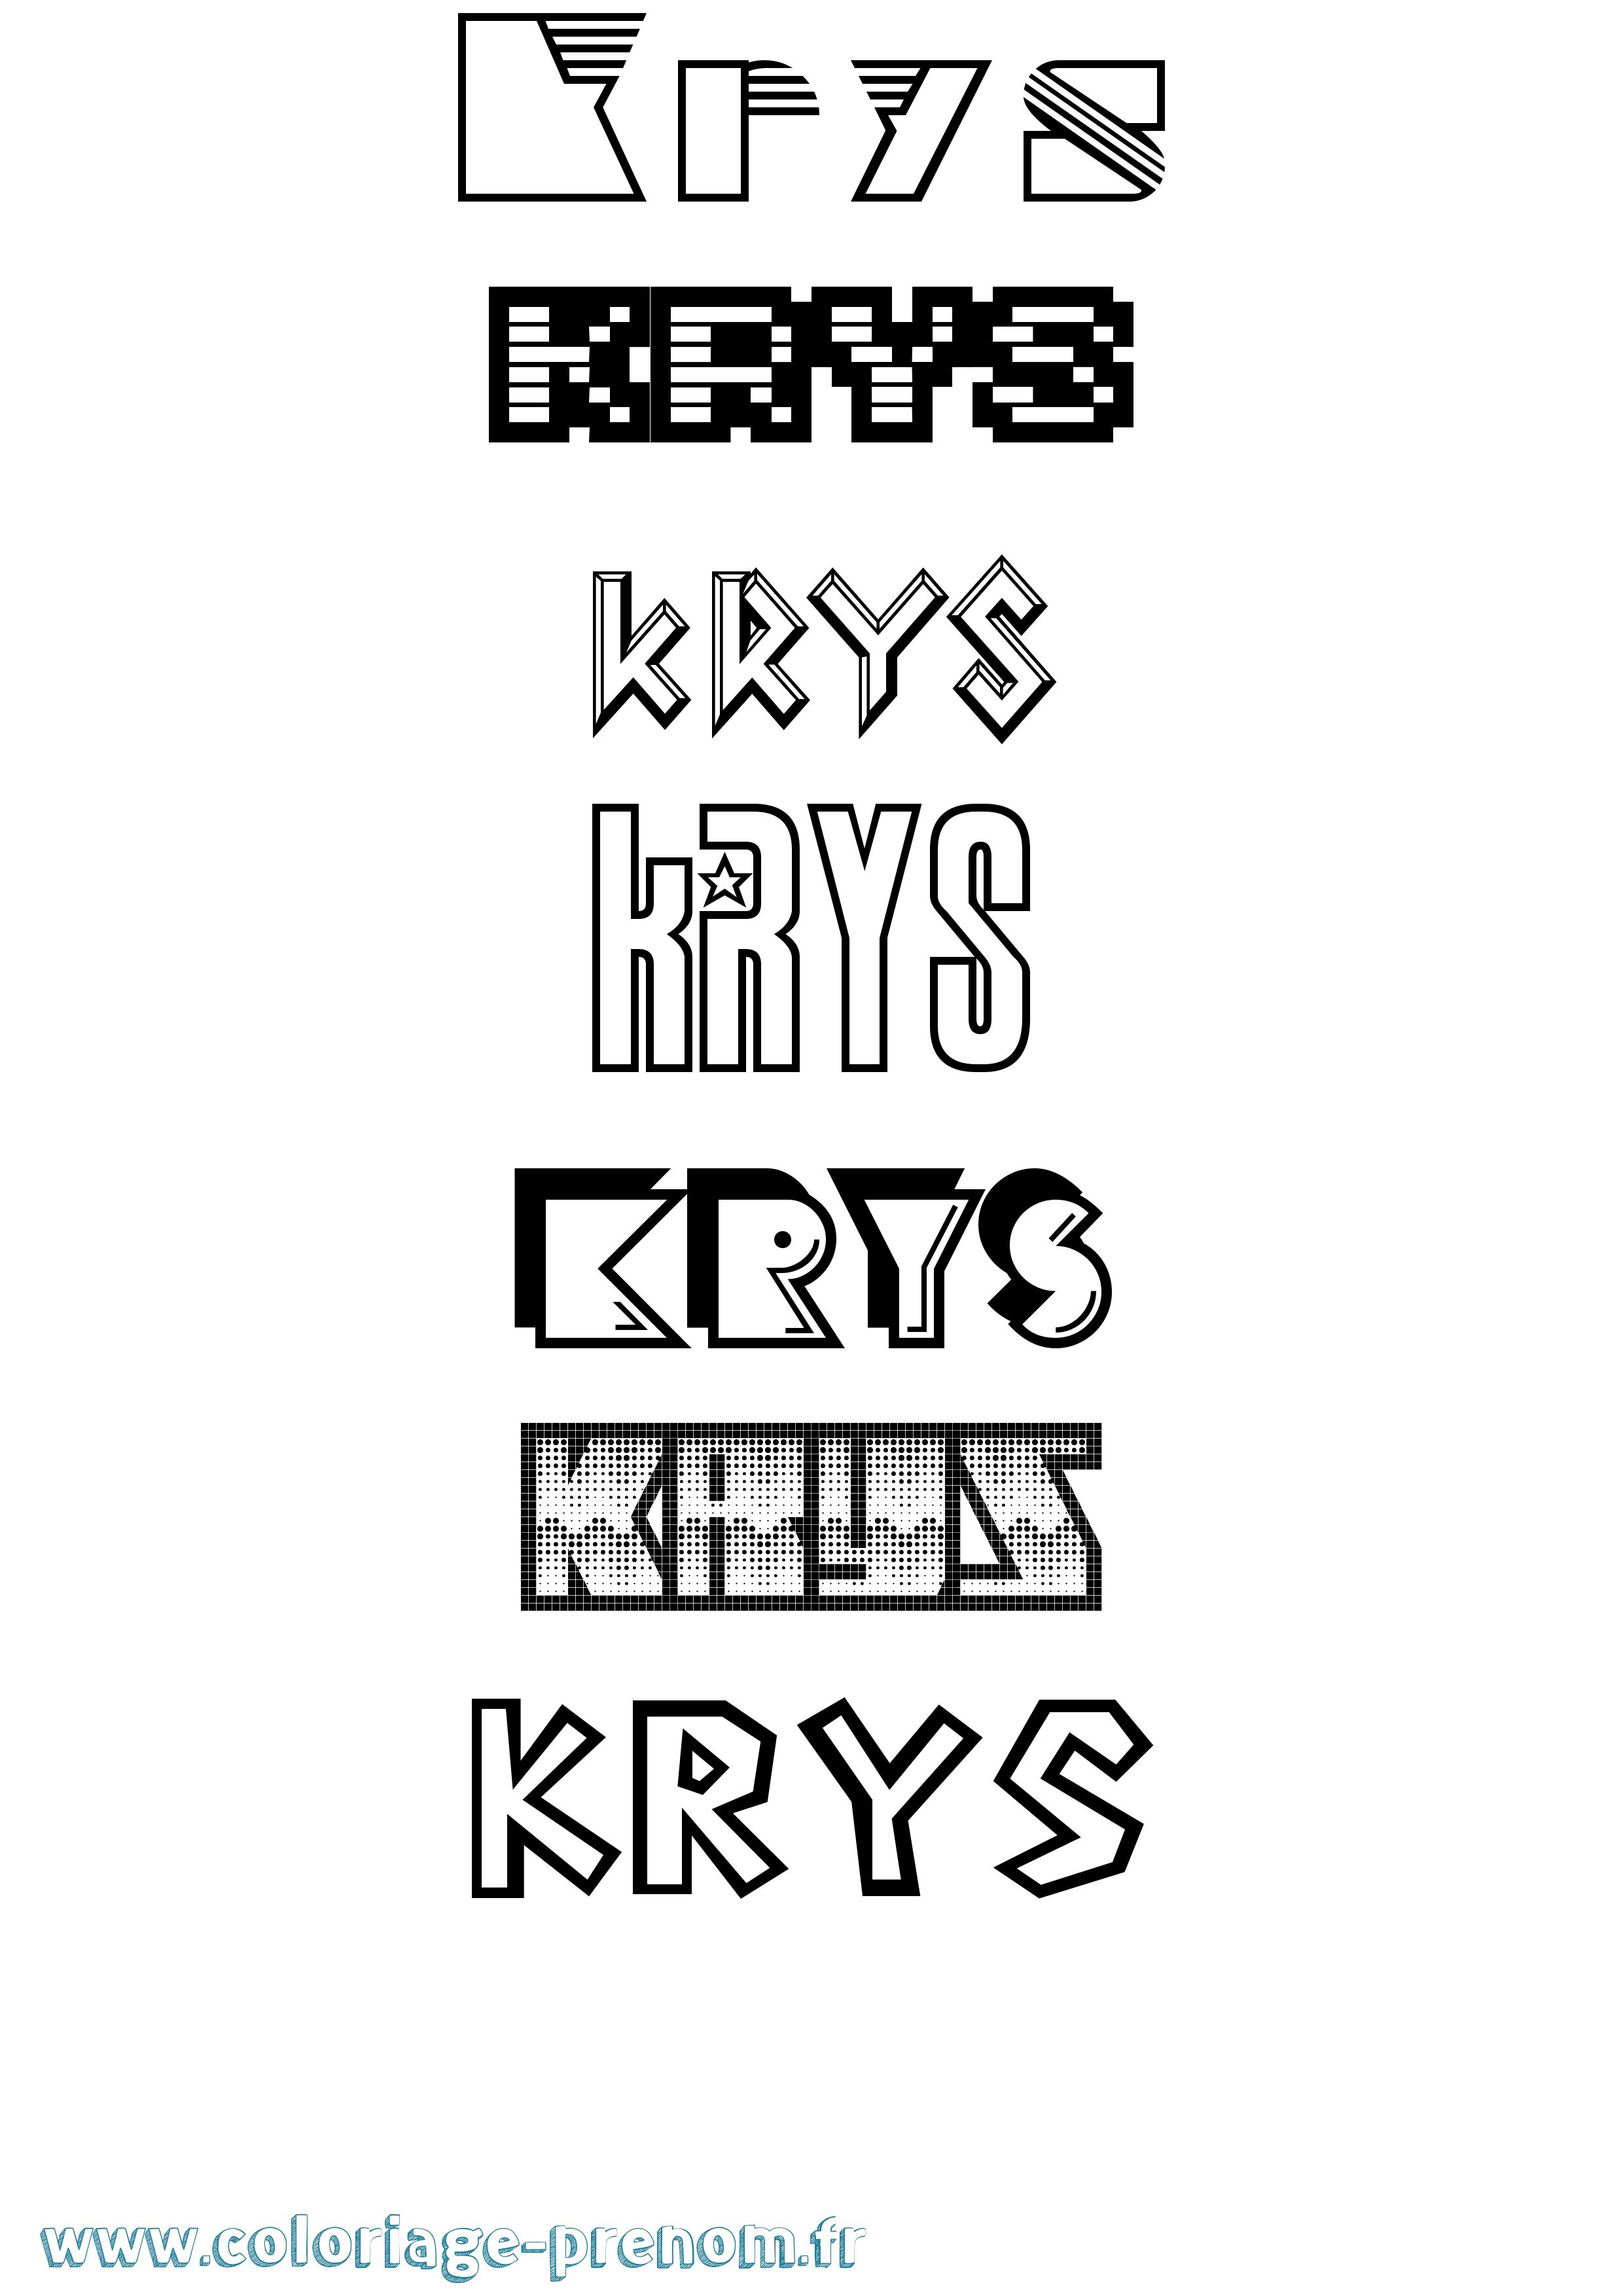 Coloriage prénom Krys Jeux Vidéos